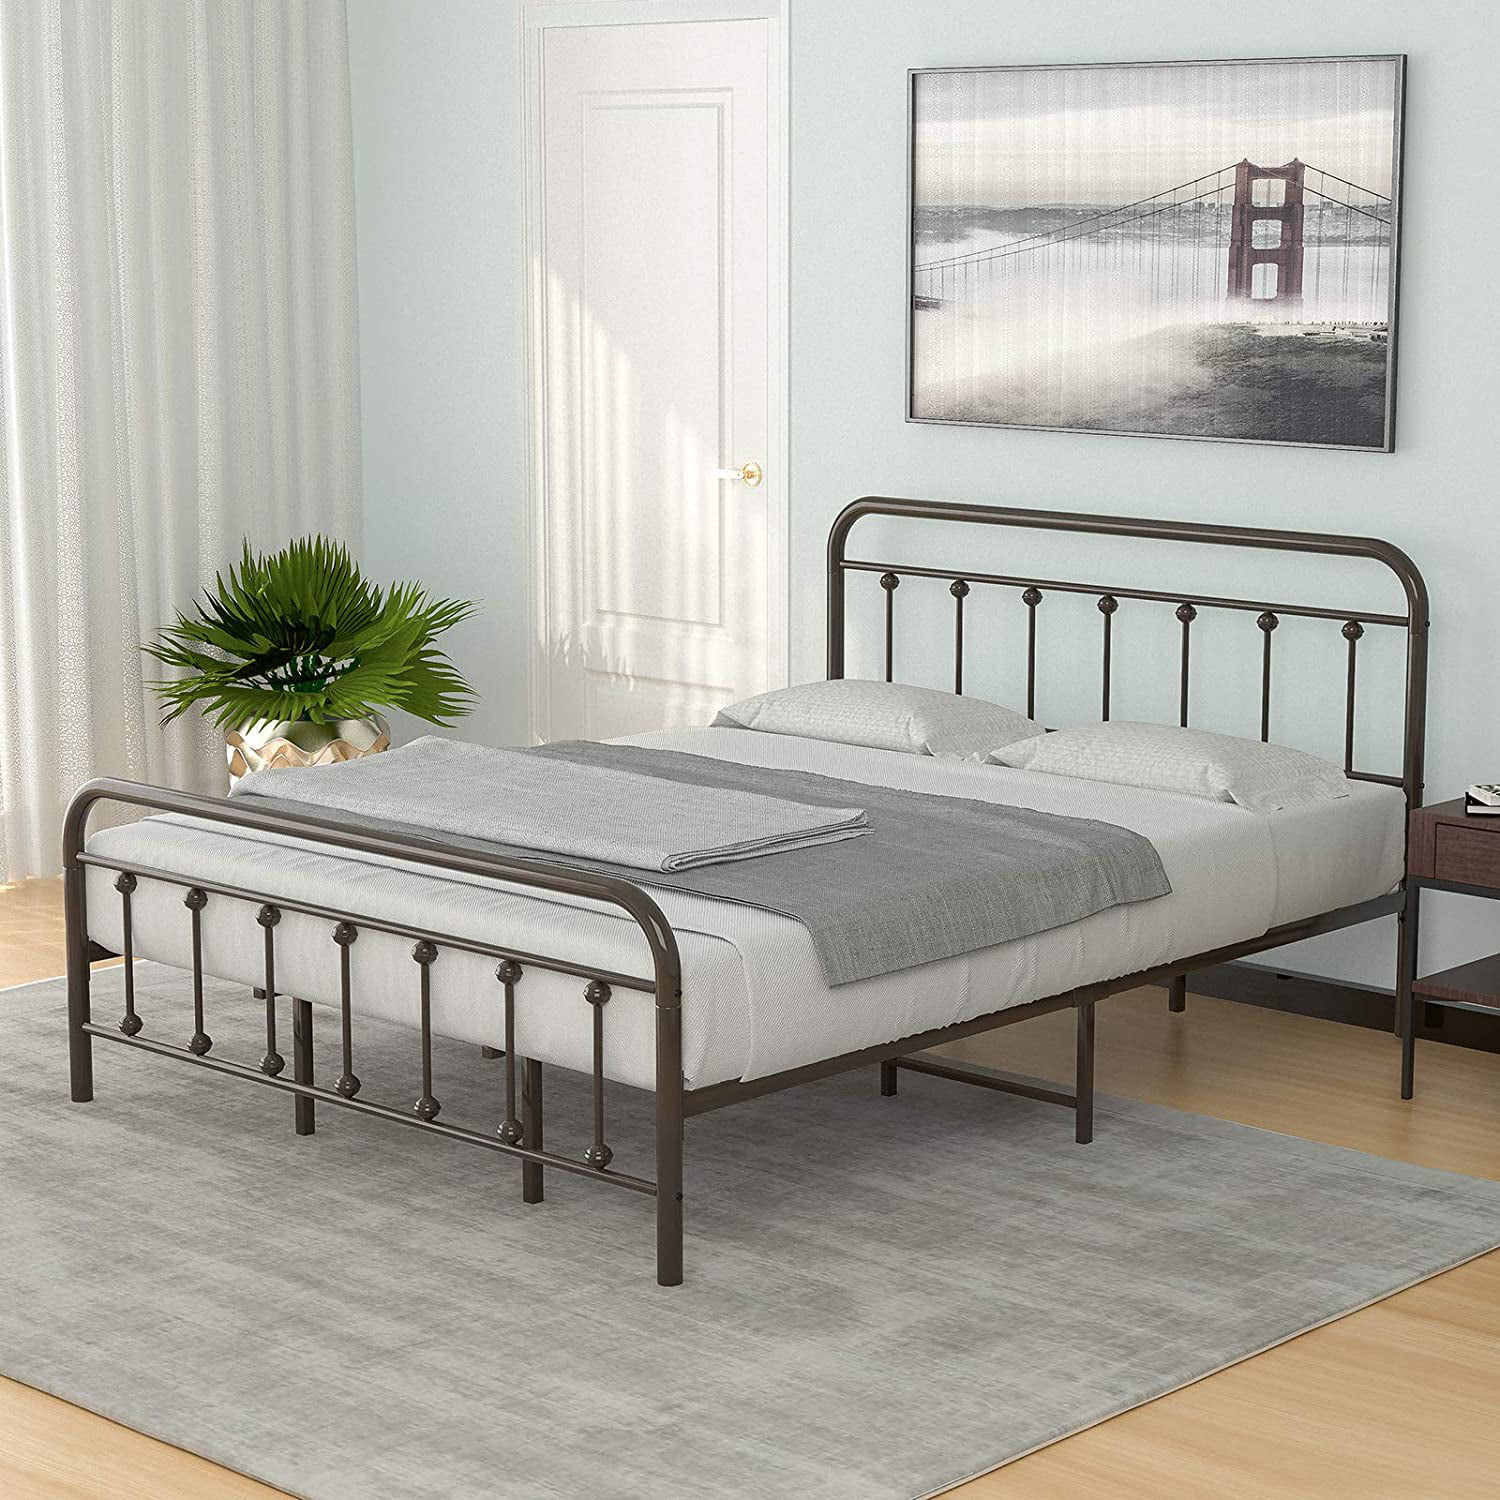 Mecor King Size Metal Platform Bed, Metal Bed Frame Mattress Foundation